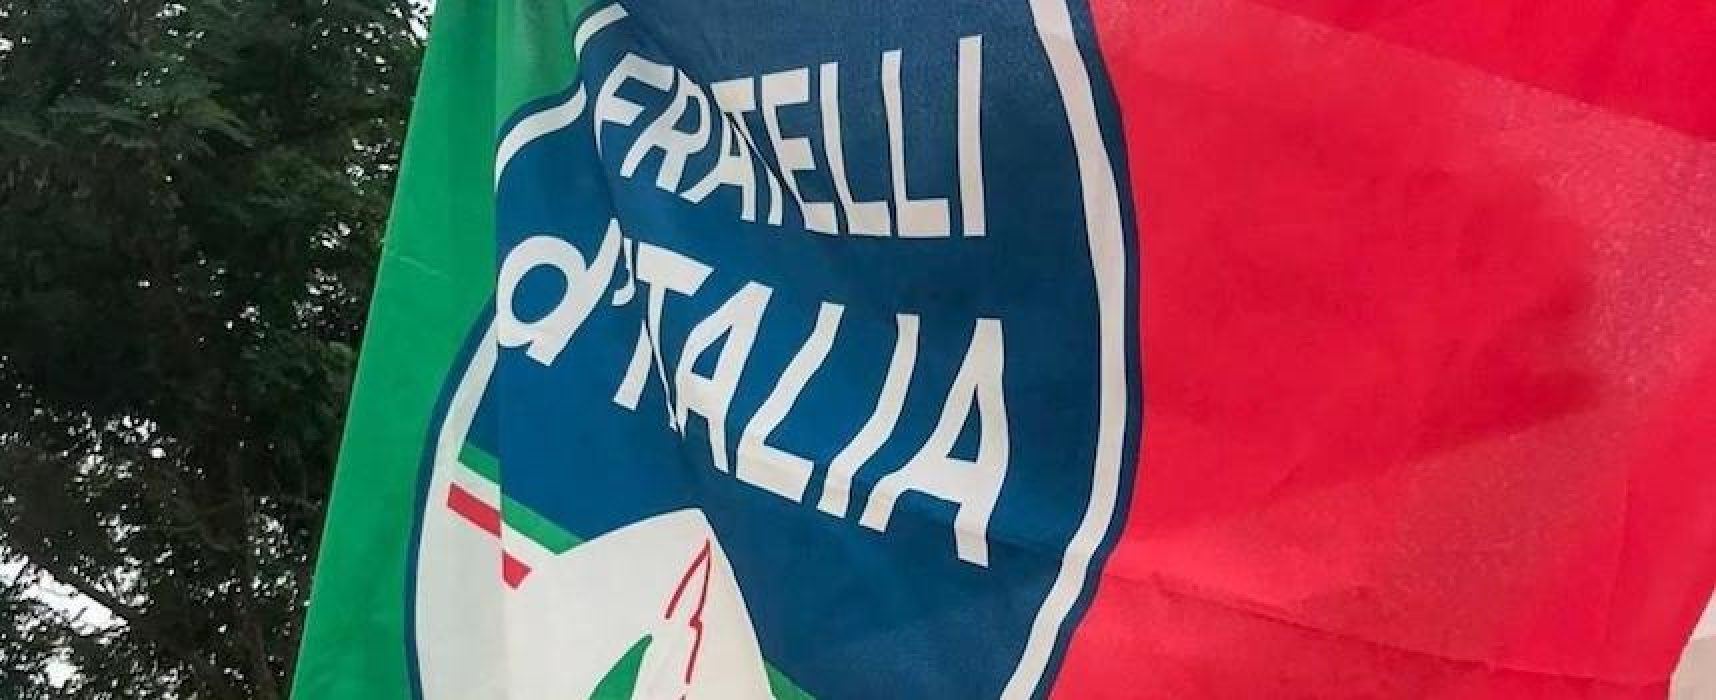 Fratelli d’Italia Bisceglie: “Violenza contro Cgil opera di delinquenti. No strumentalizzazioni”